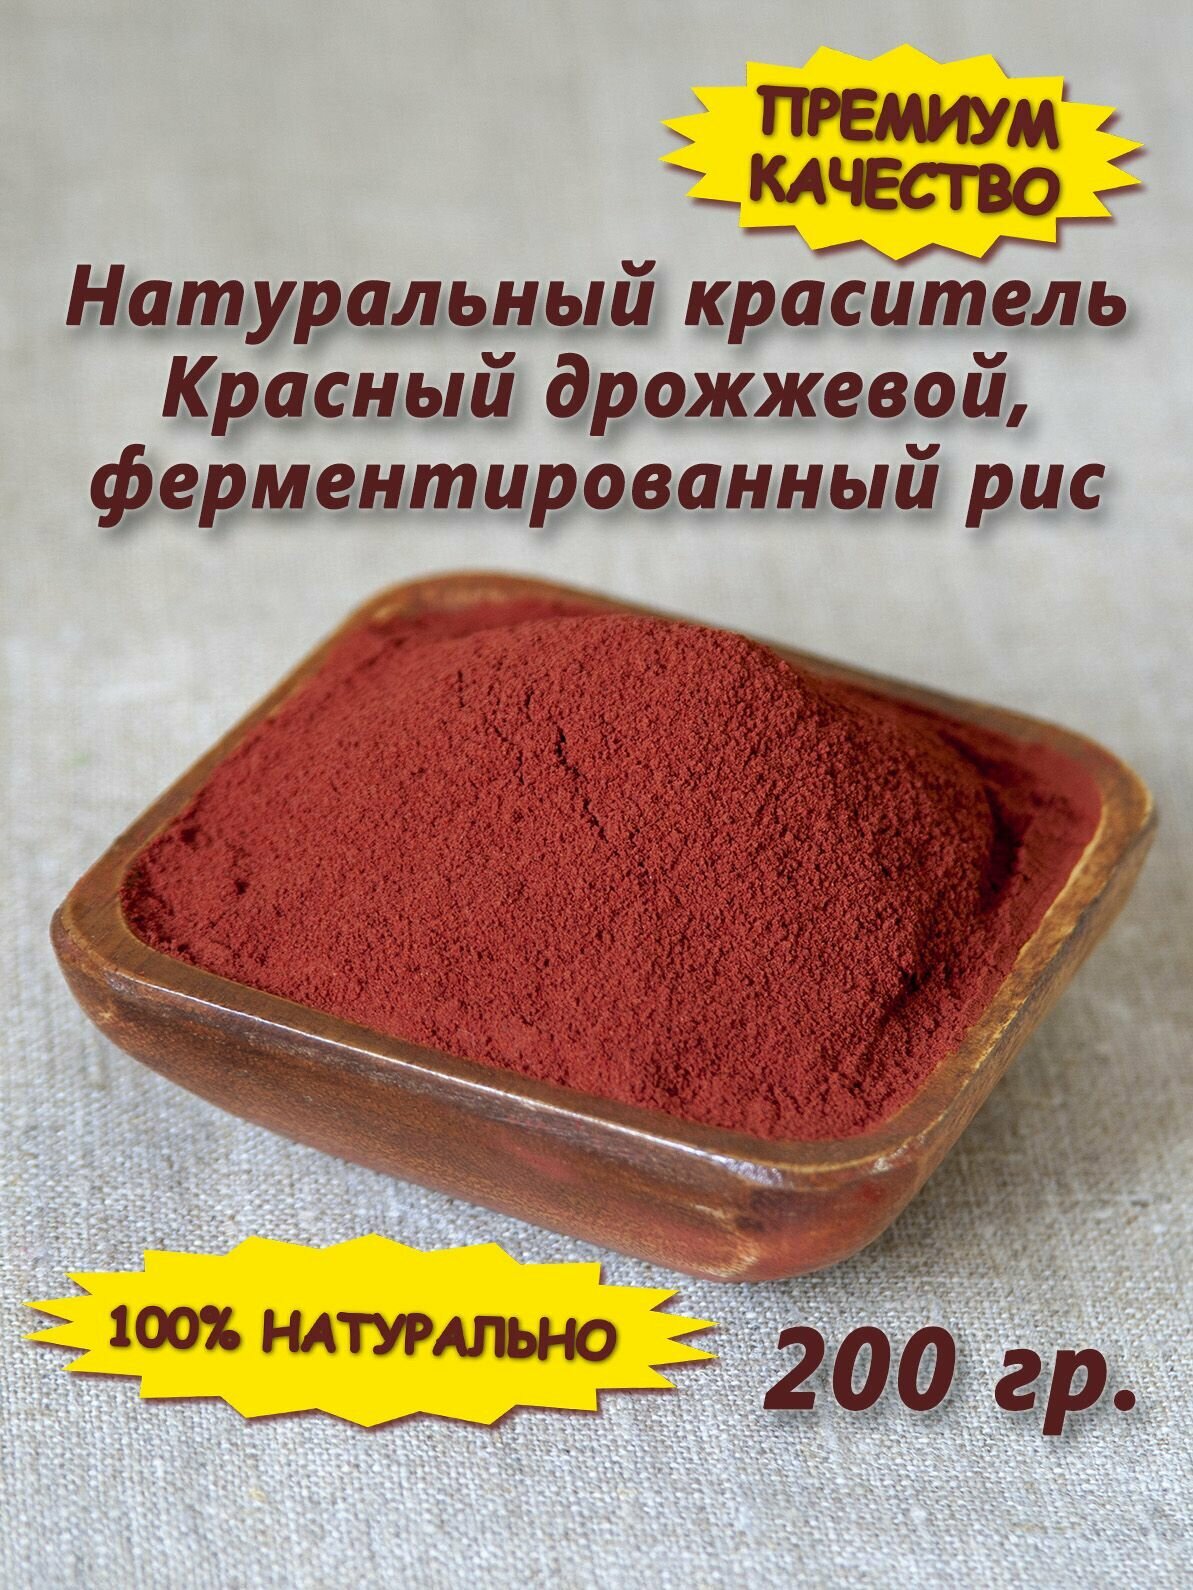 Натуральный красный пищевой краситель -дрожжевой, ферментированный рис